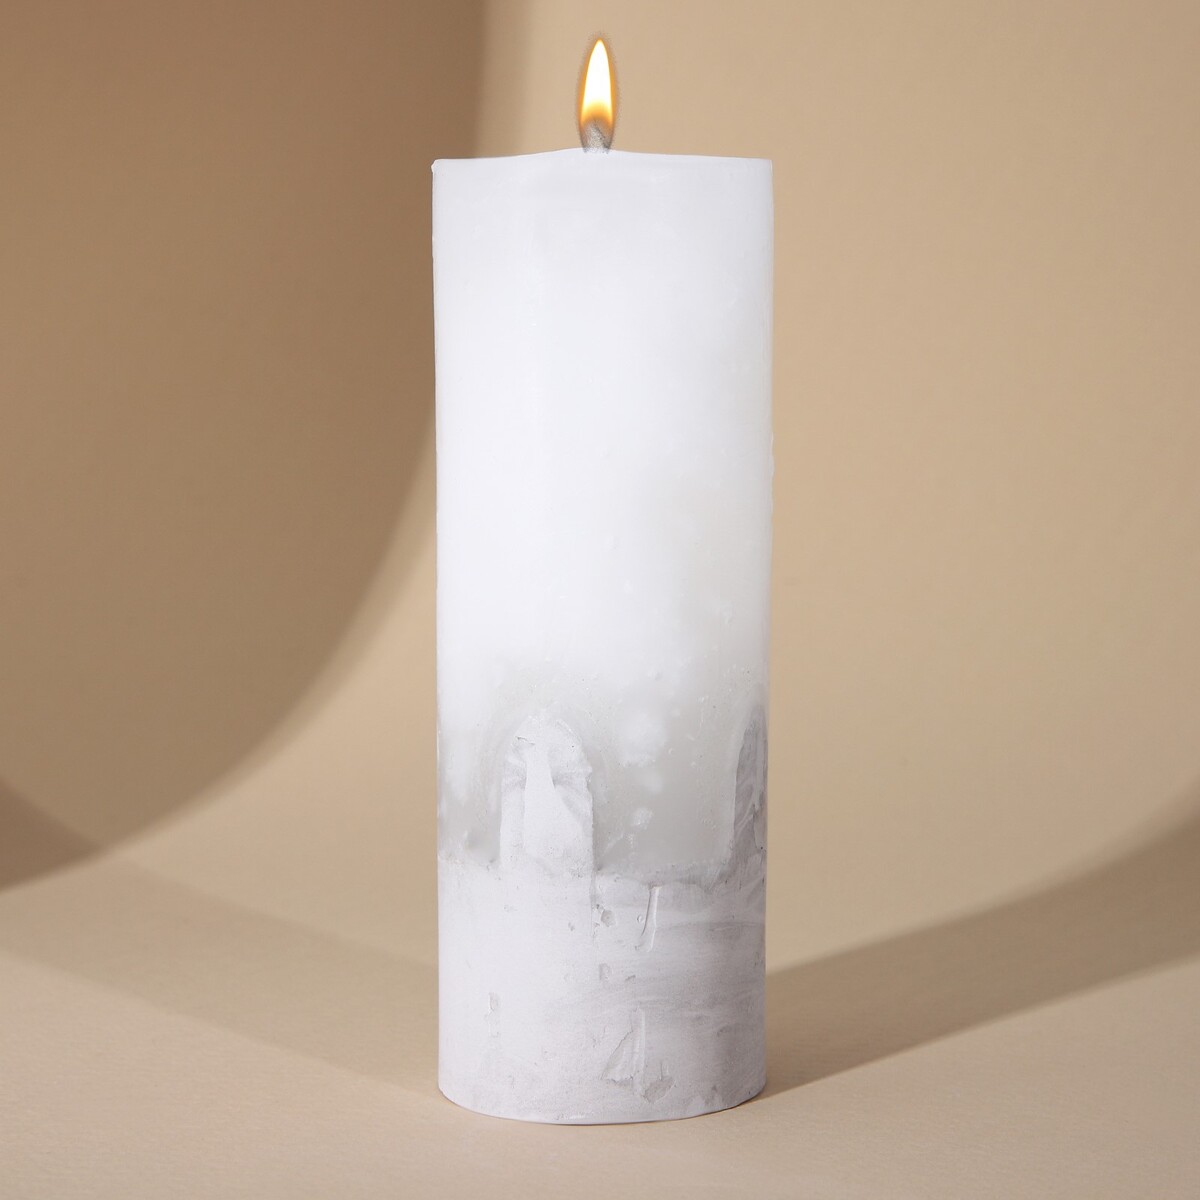 Свеча интерьерная белая с бетоном, 14 х 5 см свеча интерьерная белая с бетоном 14 х 5 см